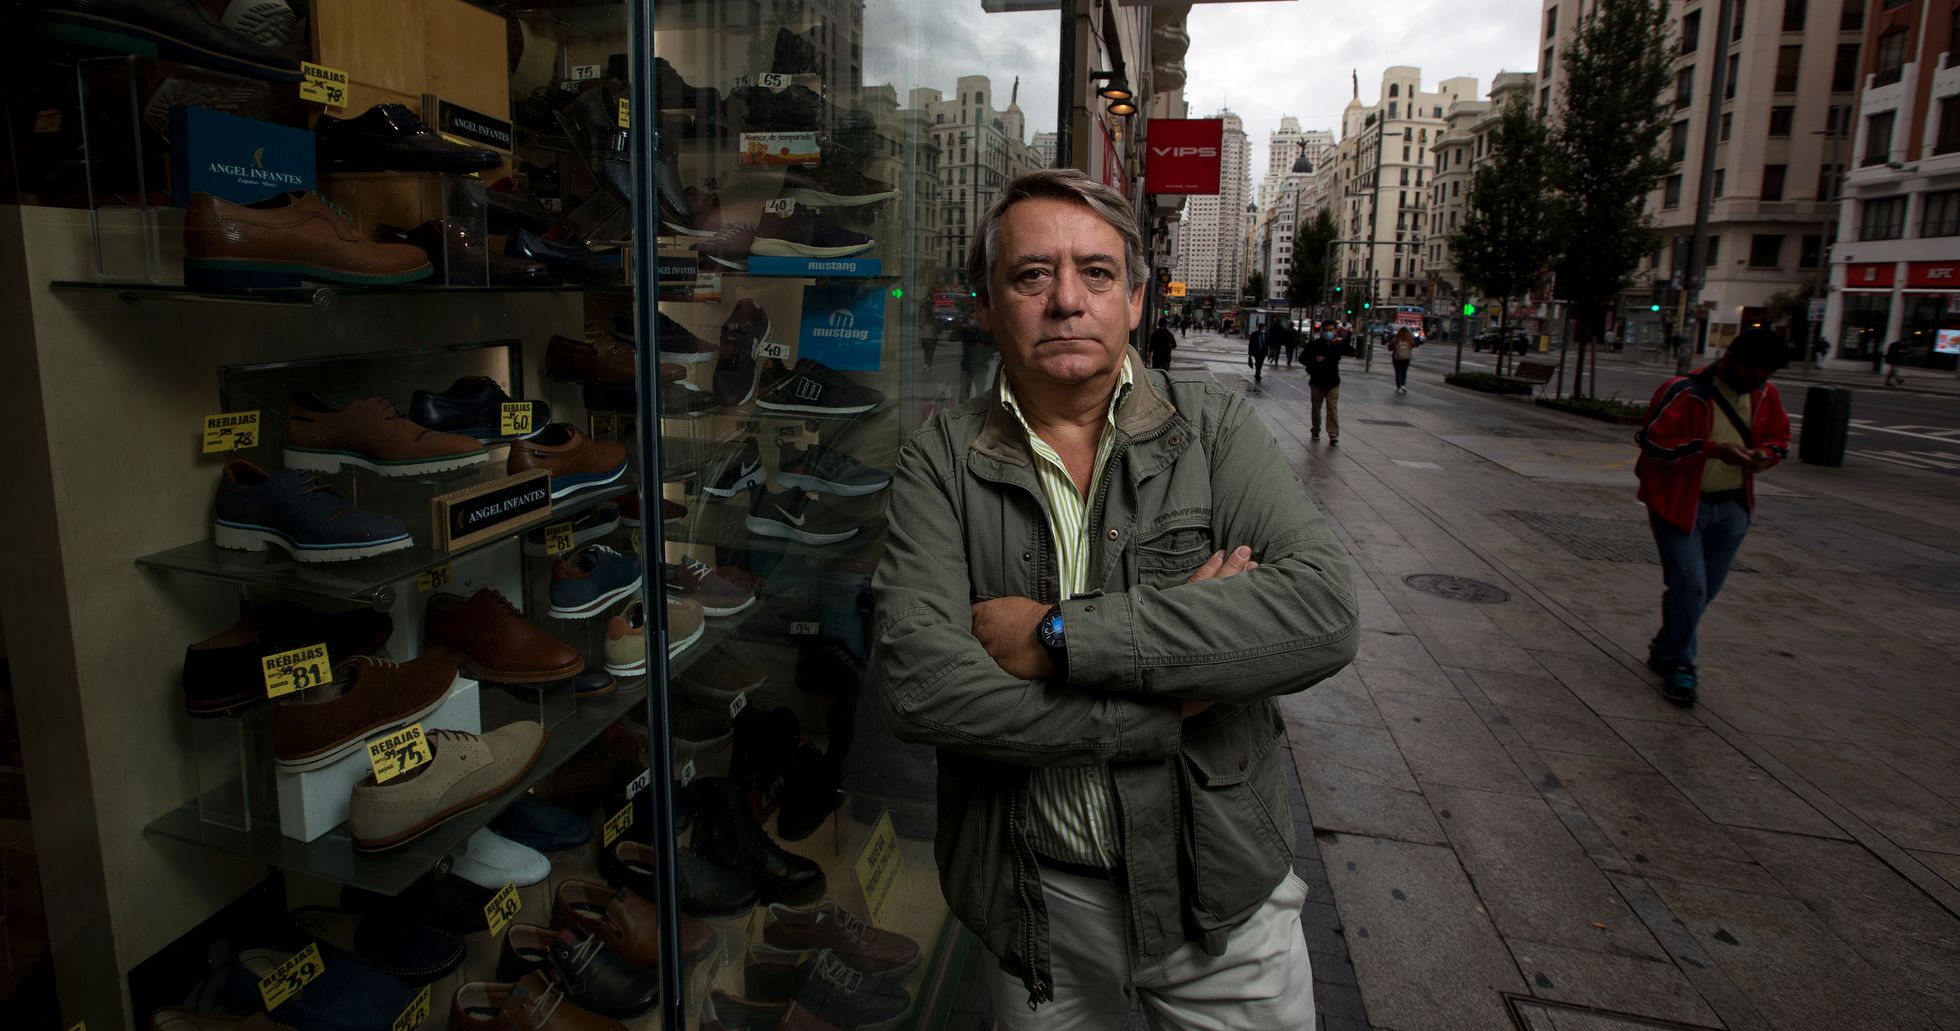 Roberto Zulaica, uno de los dueños de la cadena de zapaterías Iris, posa este jueves por la mañana en el escaparate de su tienda de la Gran Vía, Madrid